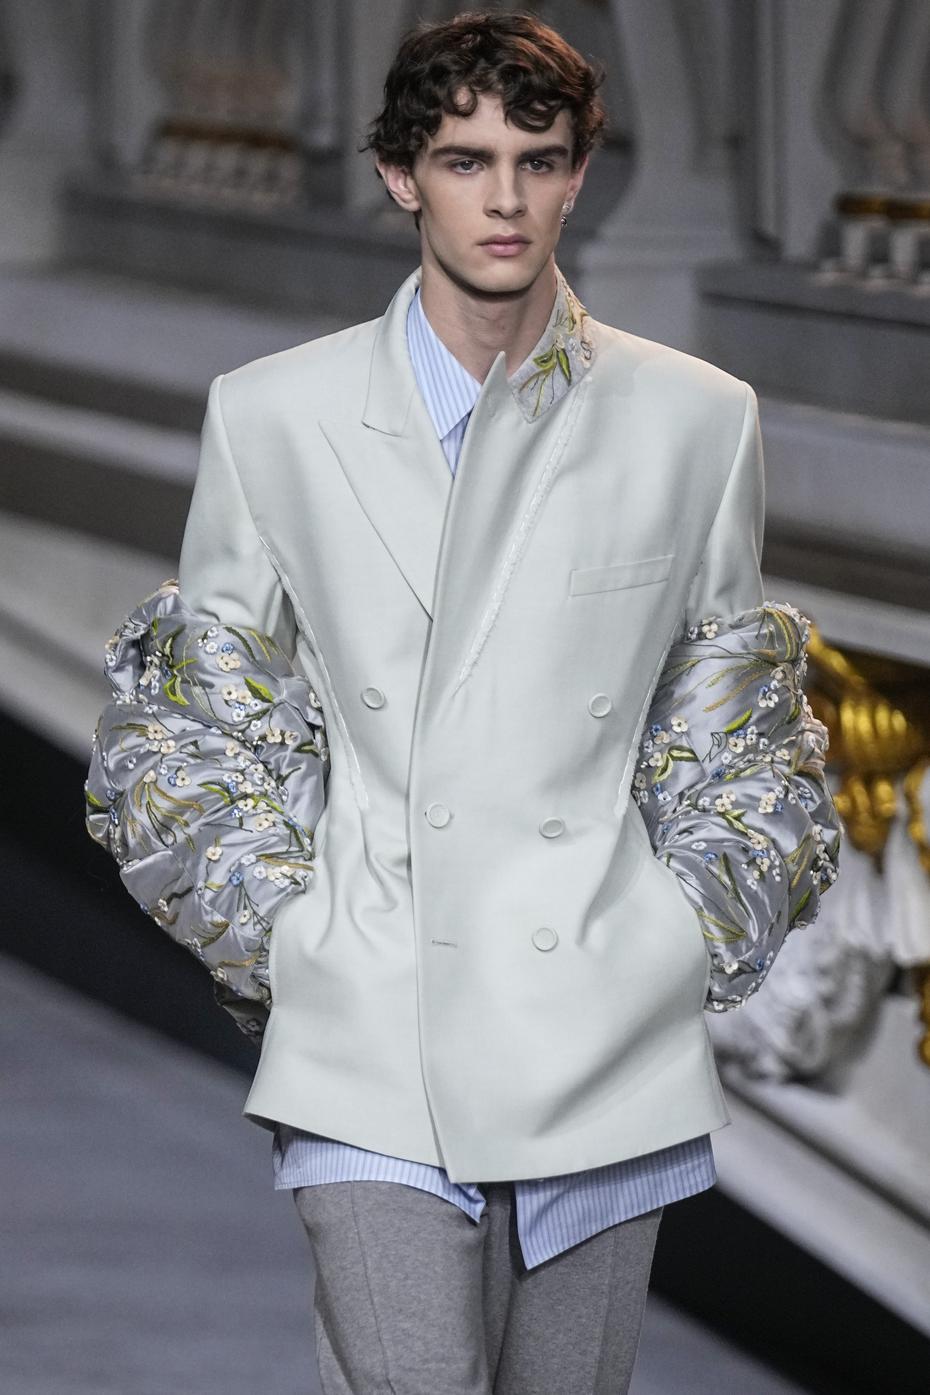 El “New Look” se vio en las chaquetas, marcadas en la cintura y con un ligero volumen, como el mítico modelo “Bar” de la firma, aunque en tonos grises y tejidos muy británicos.